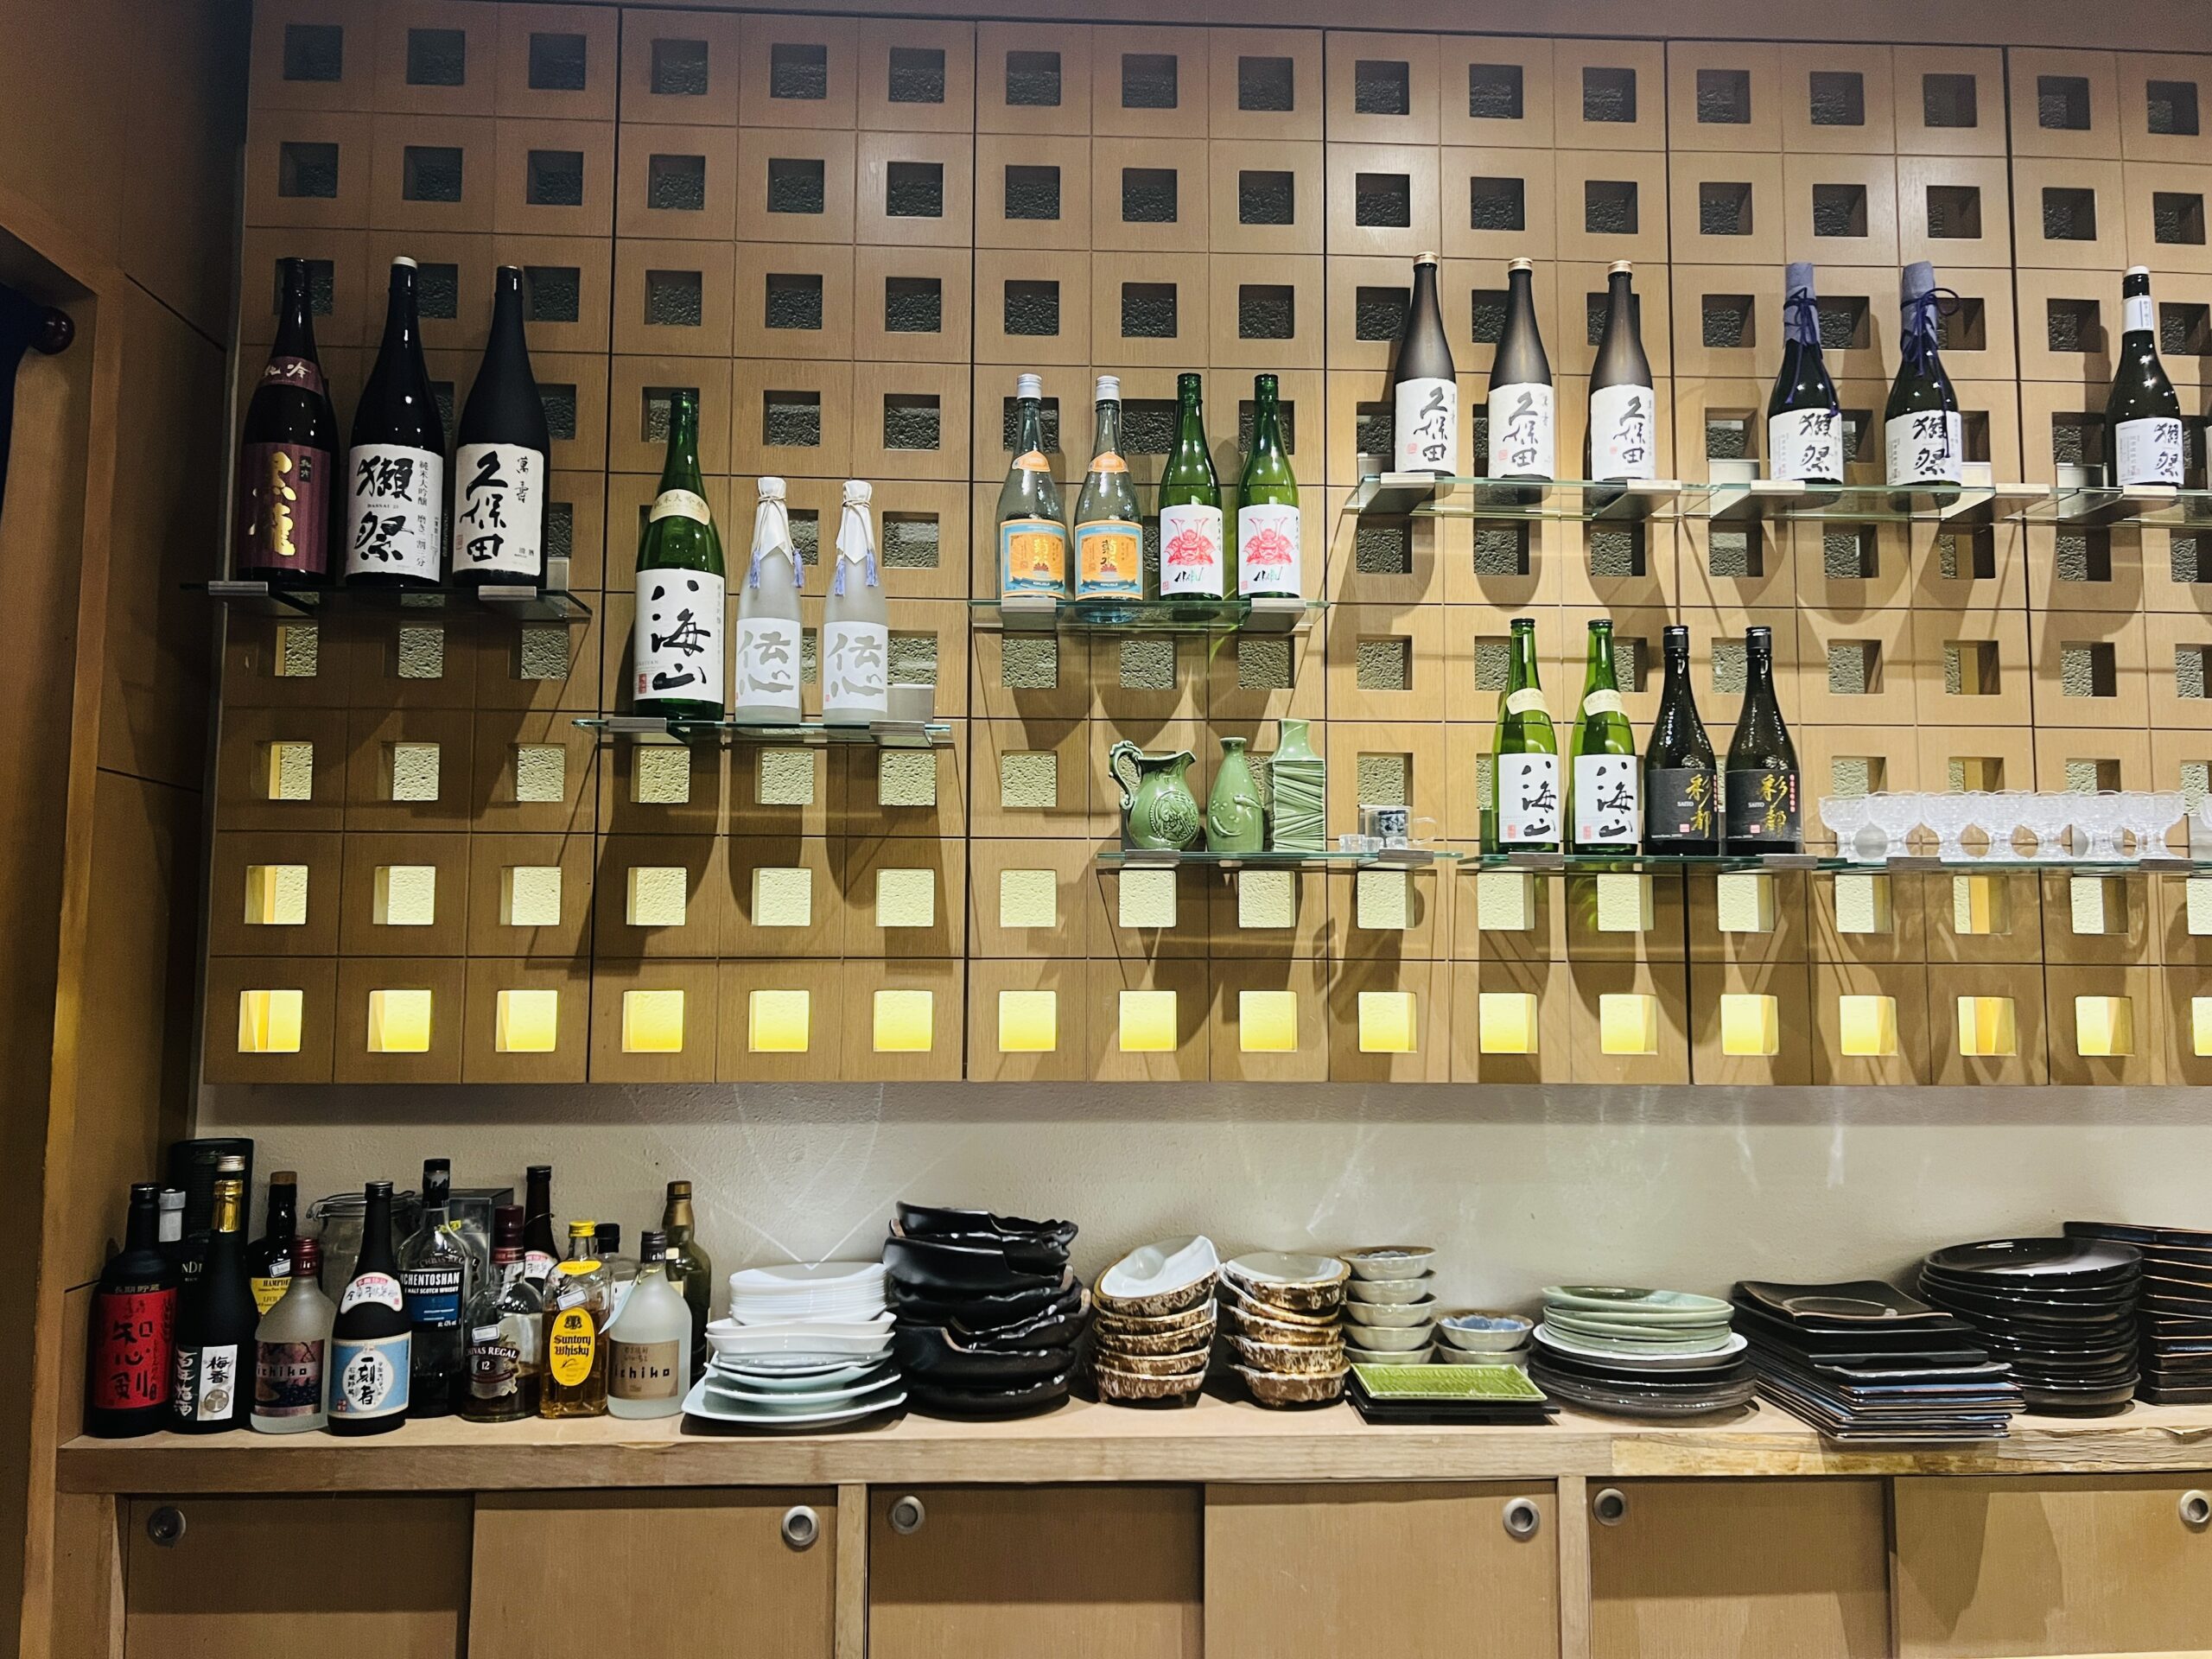 Mitsu Sushi Bar - Sake Display